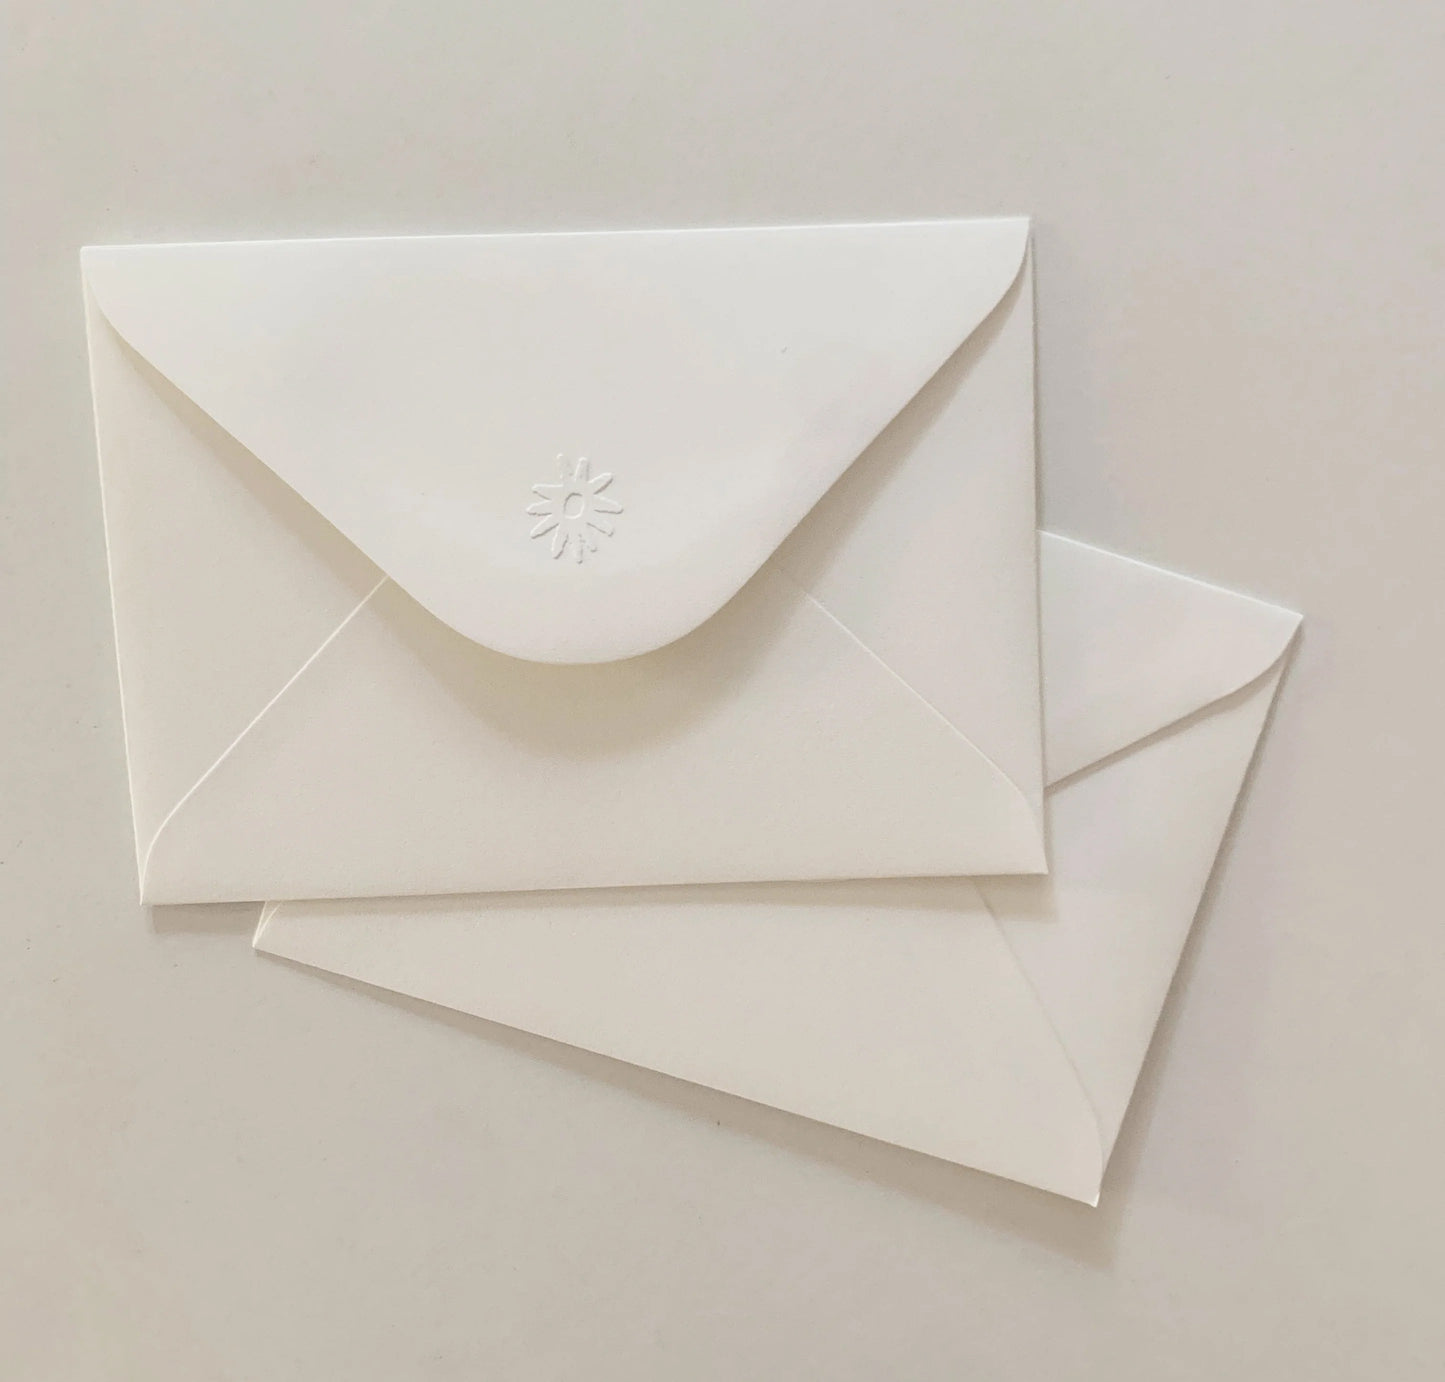 Giftcard embossed textured envelope